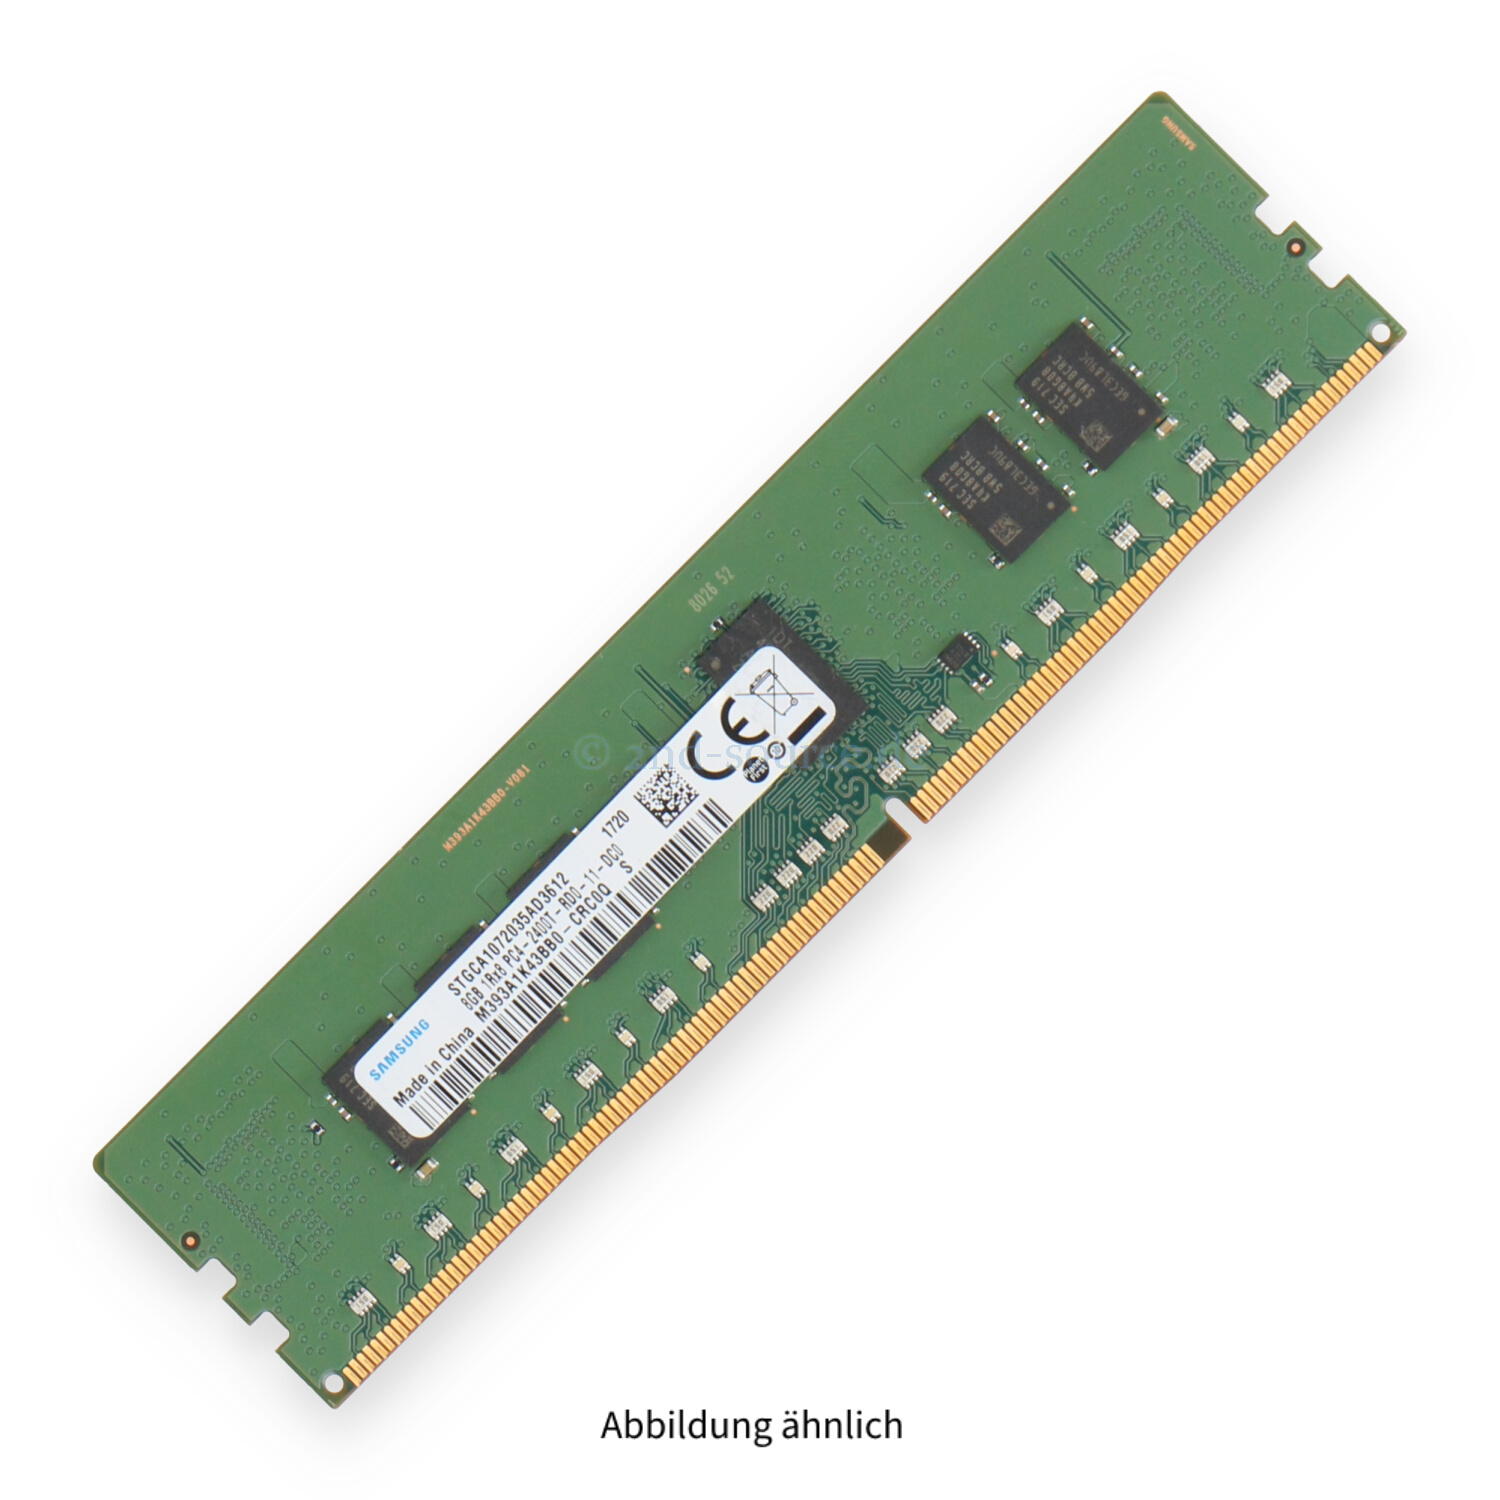 HPE 8GB PC4-19200T-R DIMM Single Rank x8 (DDR4-2400) Registered ECC 805347-B21 819410-001 809080-091